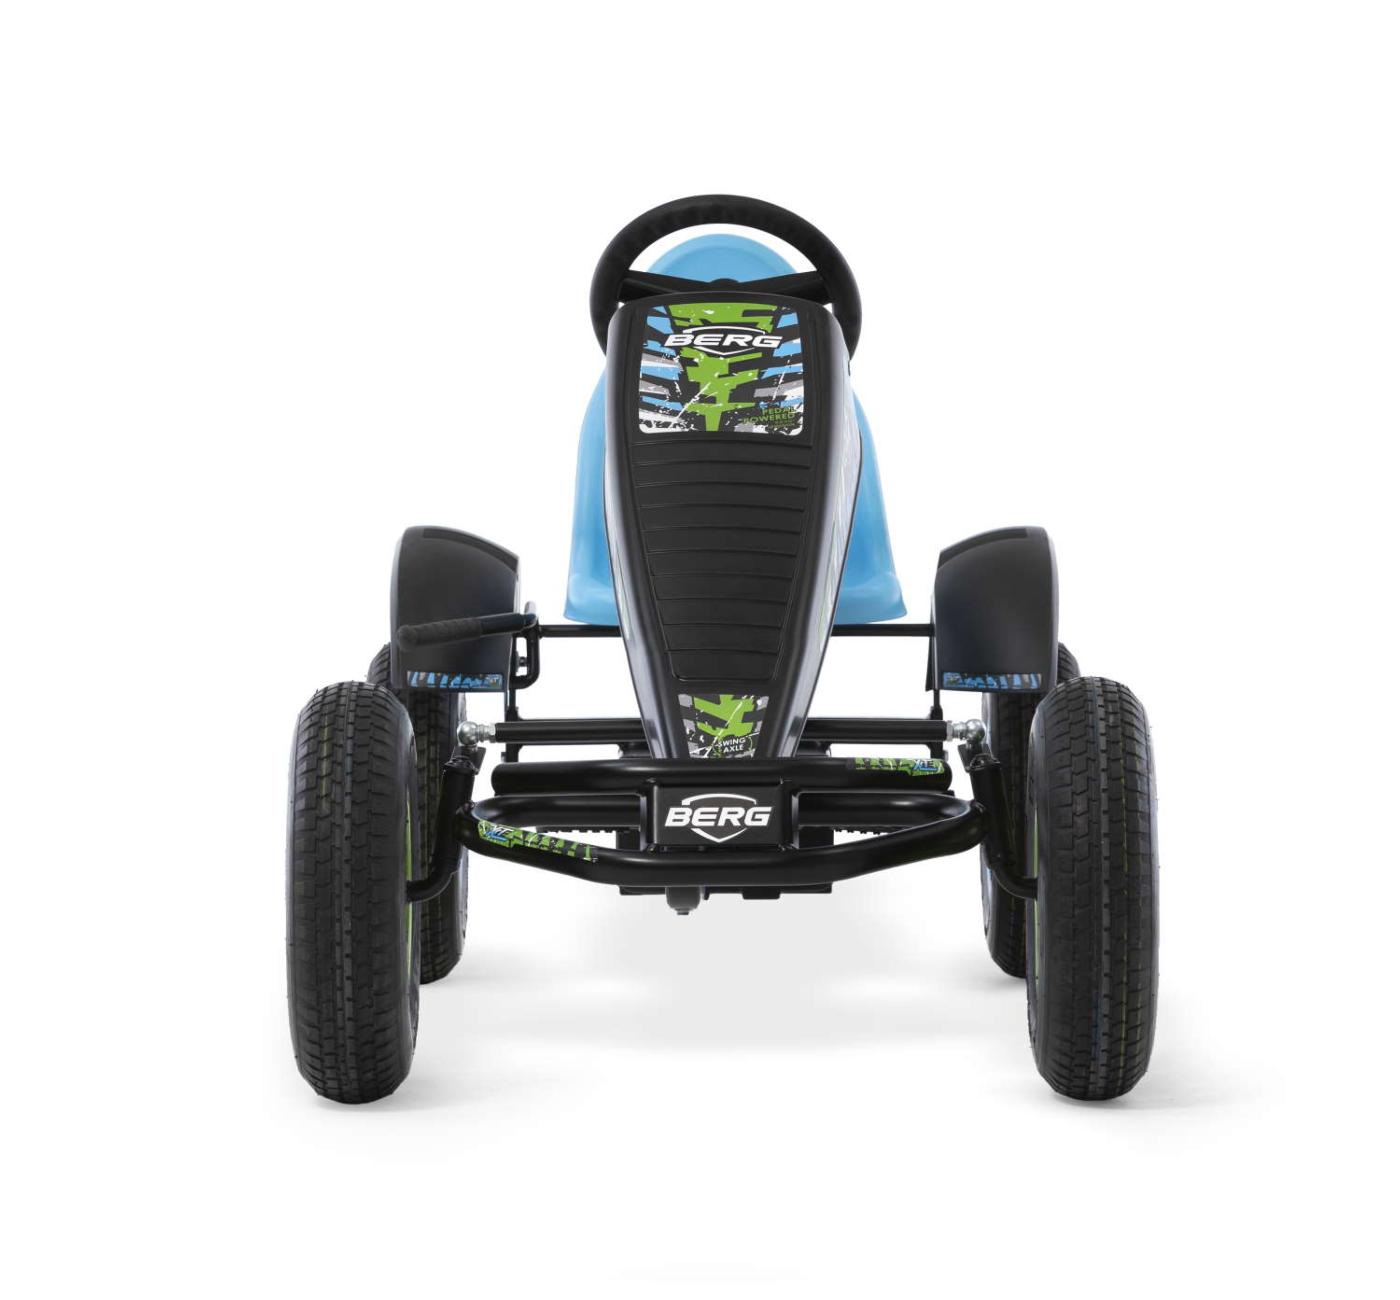 Kart de pedals BERG X-ite BFR per a nens de més de 5 anys i amb els colors de motocross